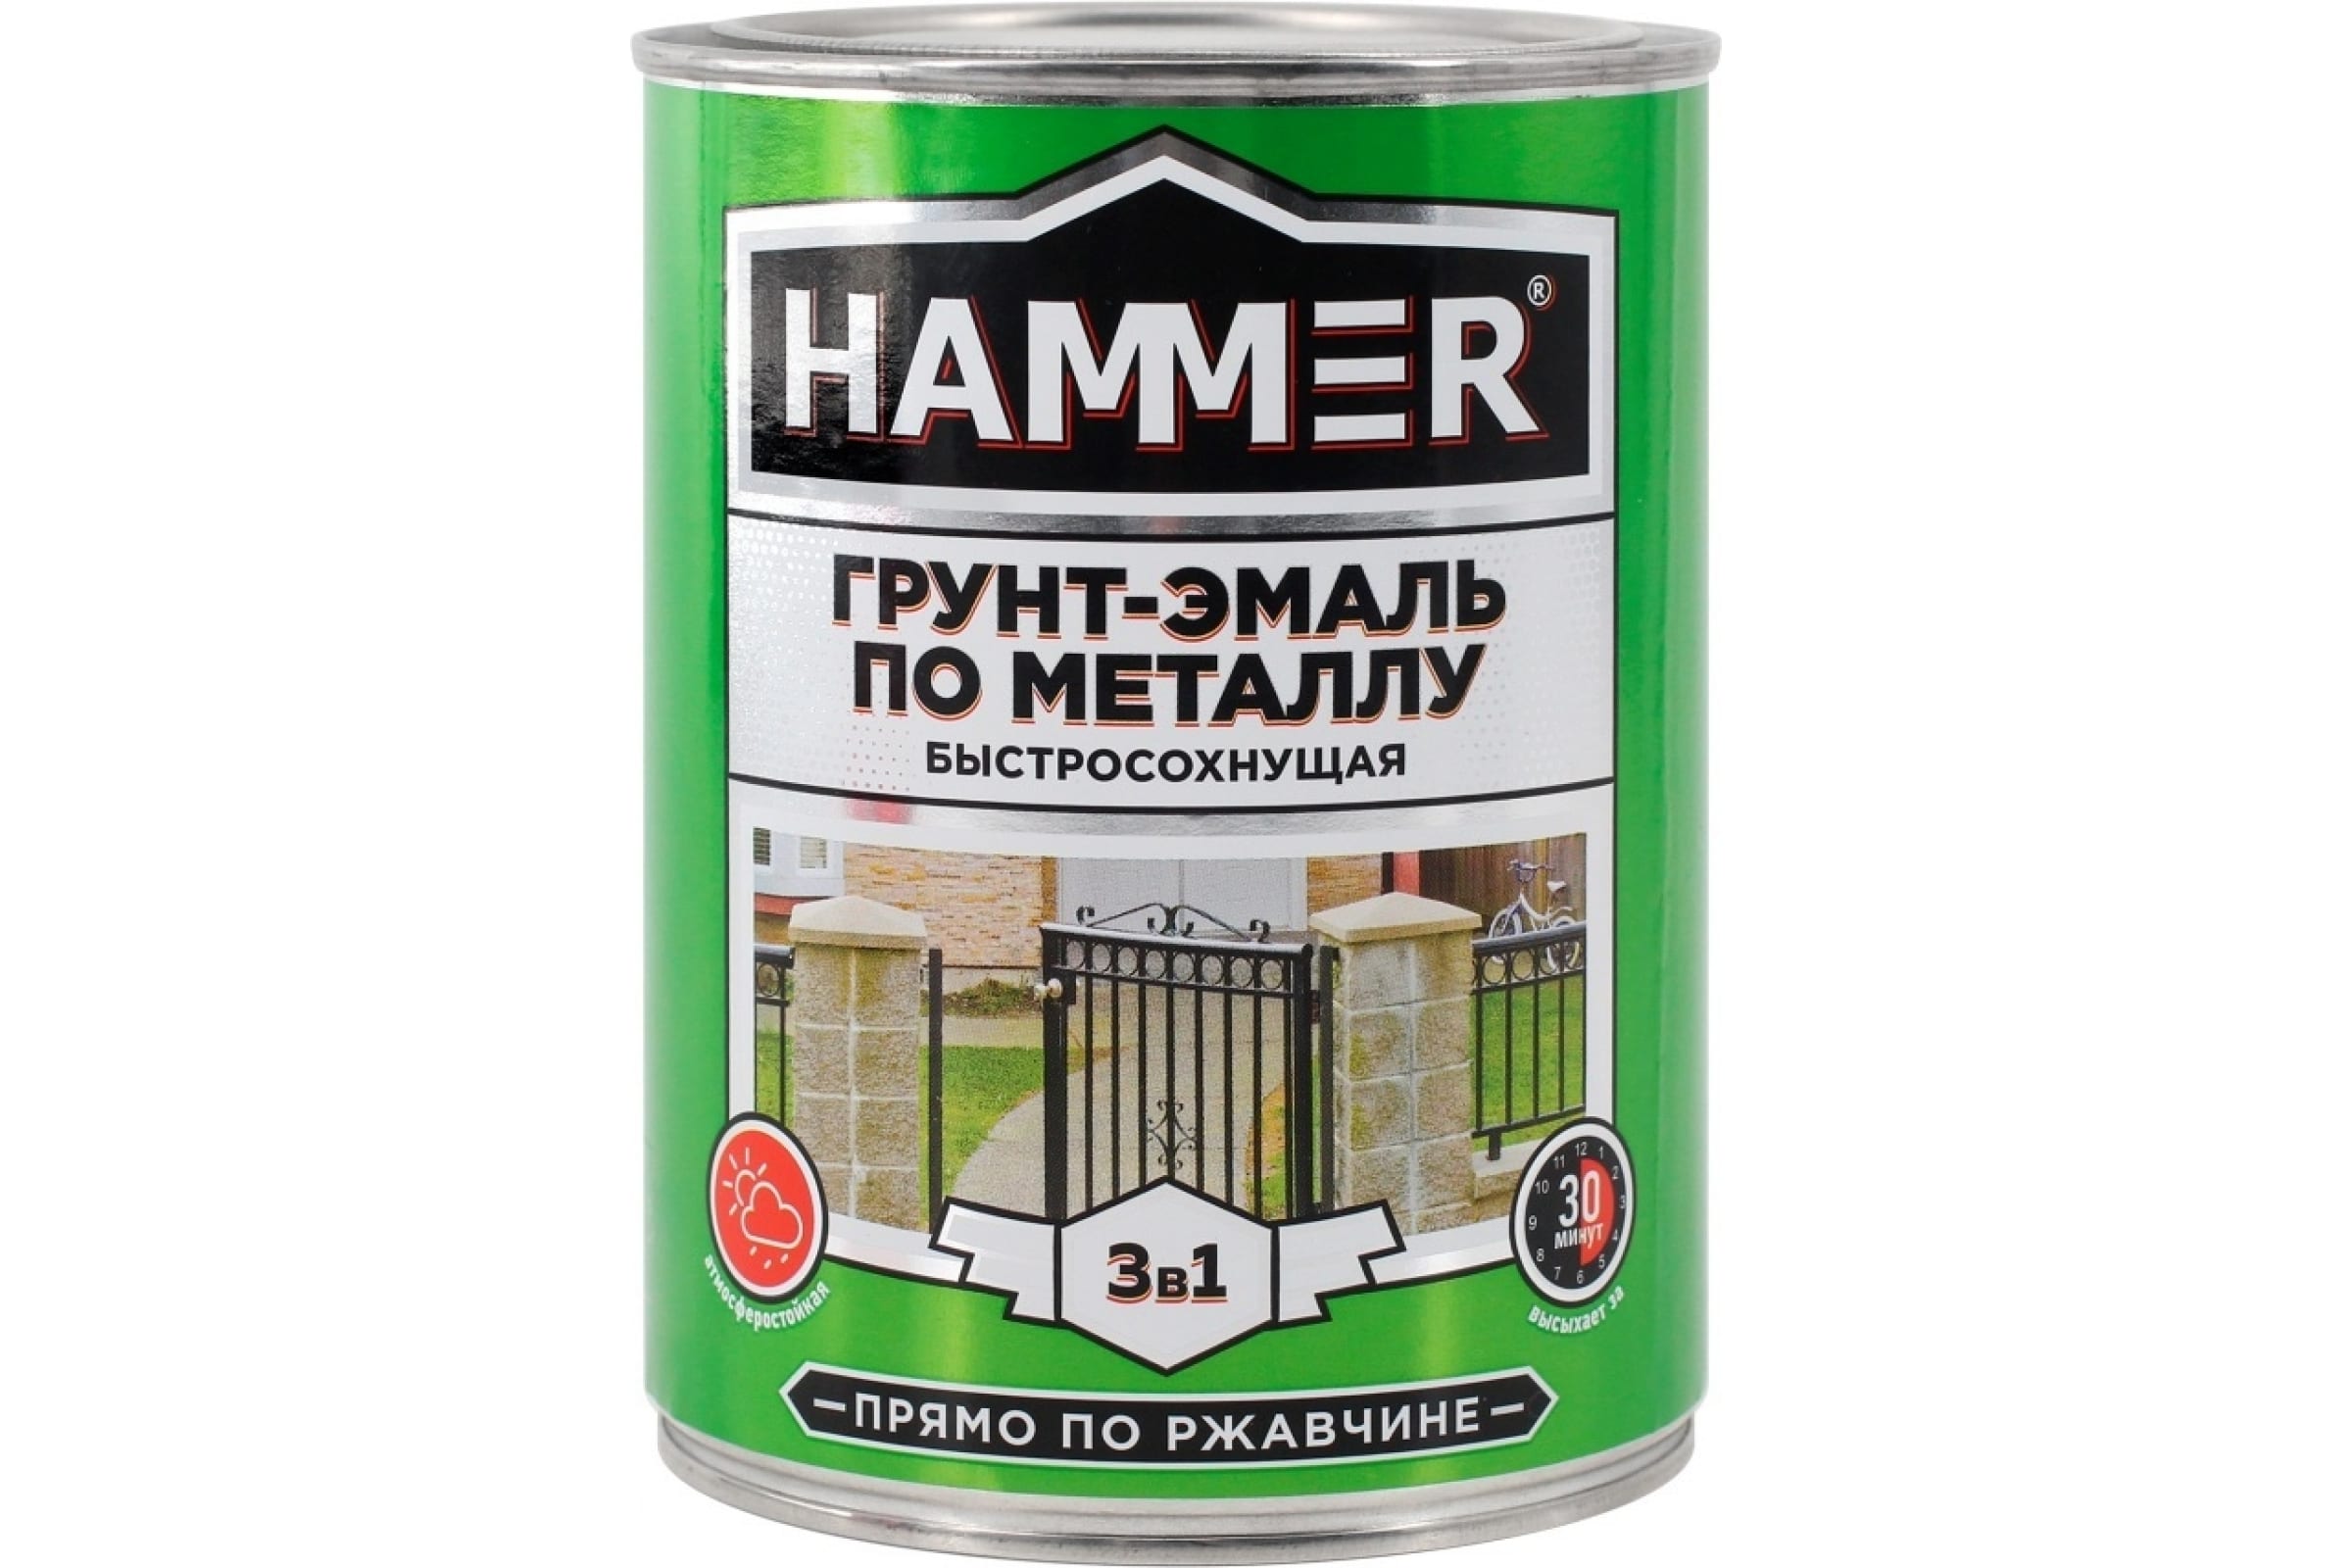 фото Hammer грунт-эмаль по металлу 3 в 1 б/с св.-серая 0,9 кг / 6 эк000116554